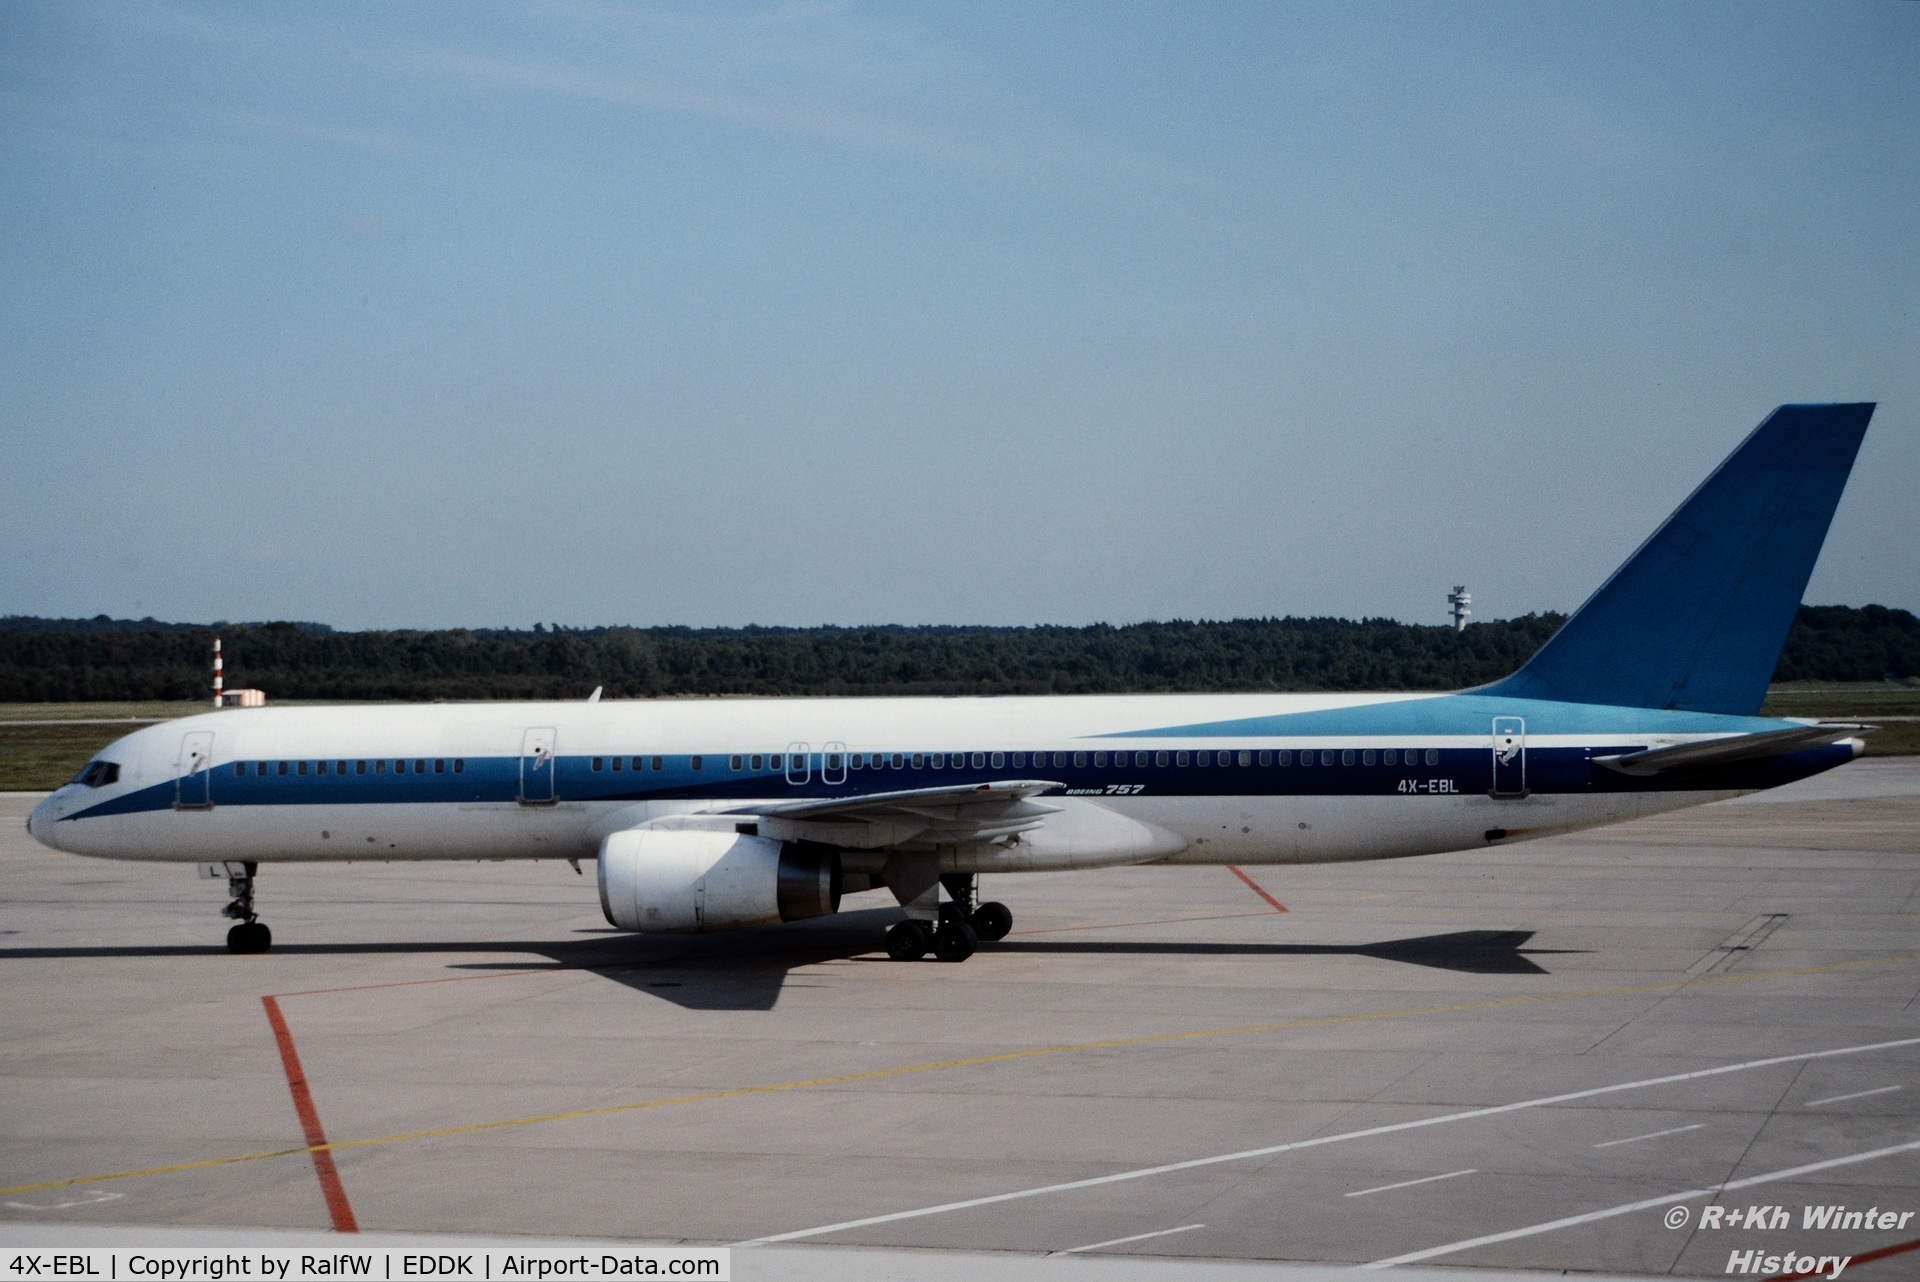 4X-EBL, 1987 Boeing 757-258 C/N 23917, Boeing 757-258 - ARKIA El Al Israel Airlines - 4X-EBL - 1992 - CGN, from a slide